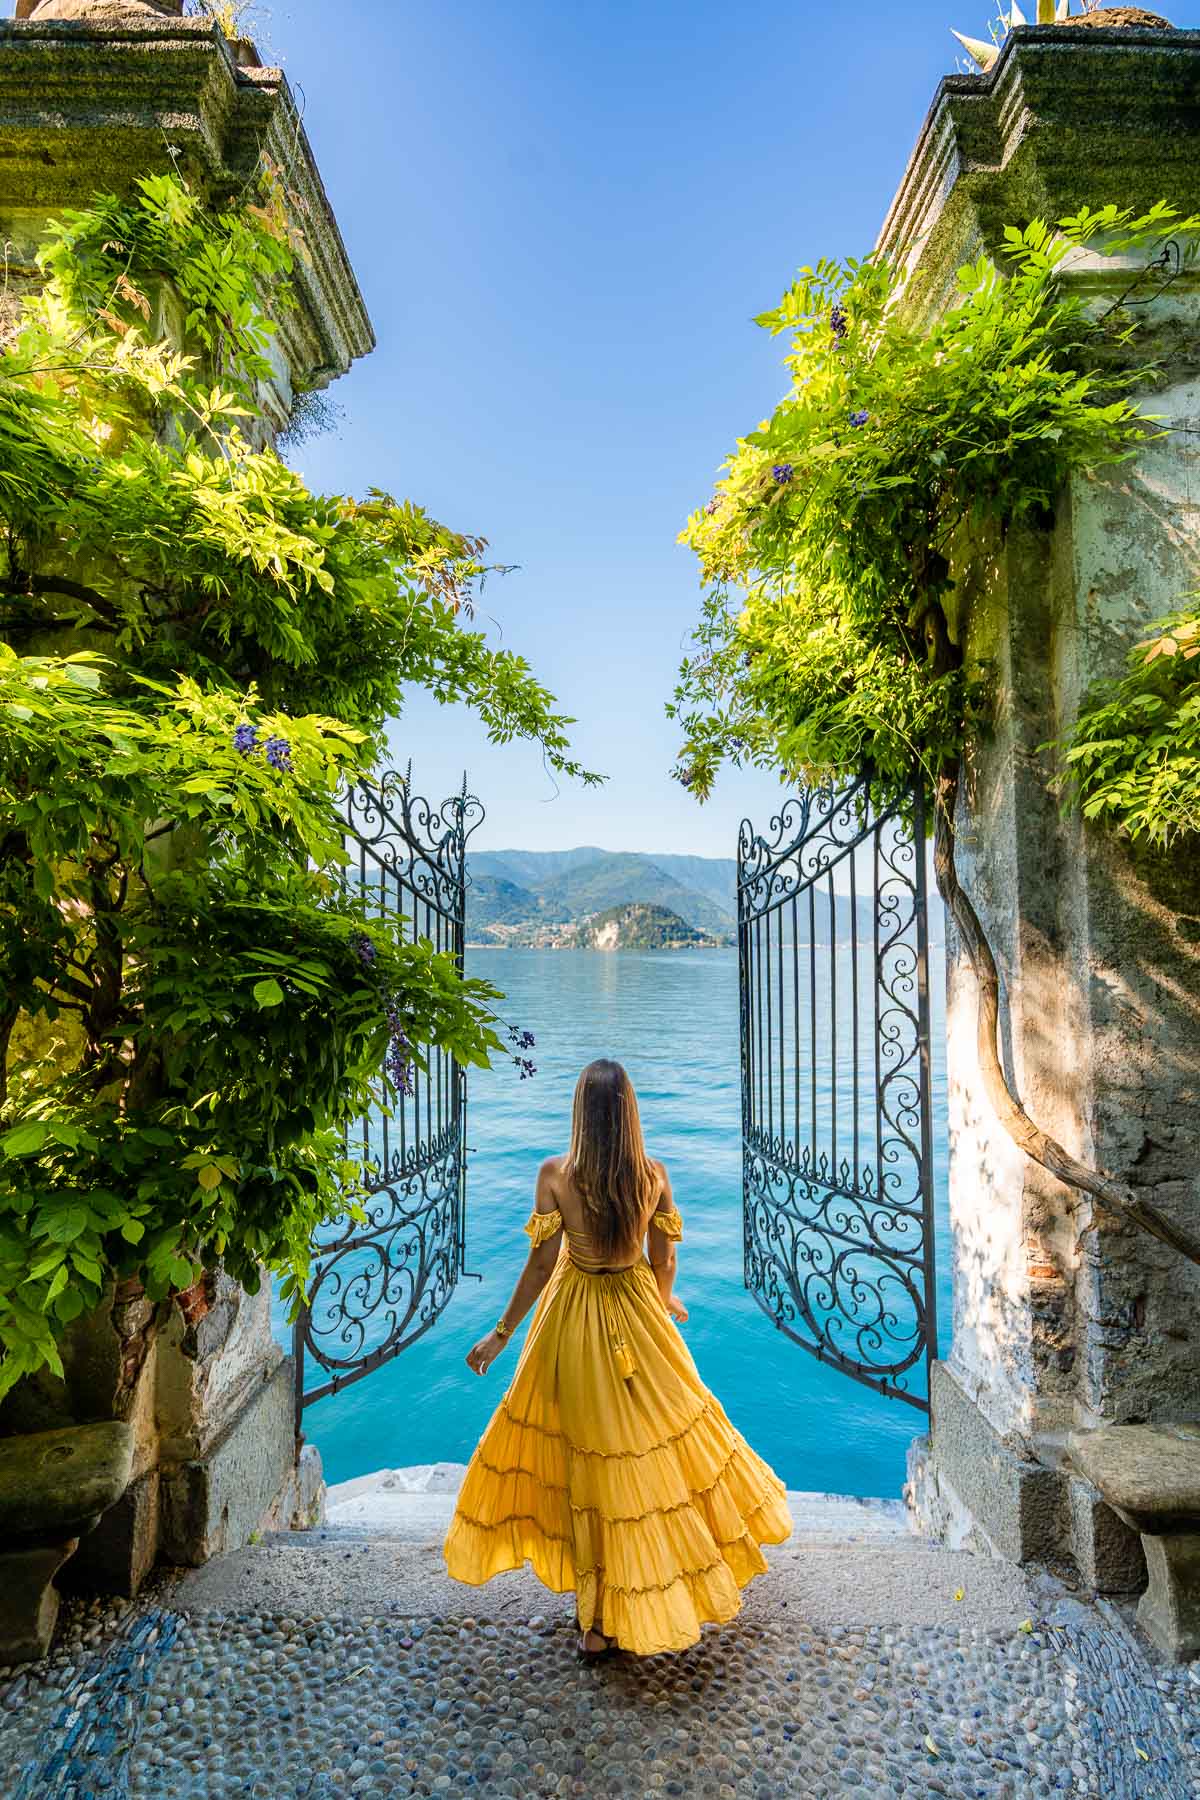 Girl in yellow dress at Villa Cipressi, Lake Como